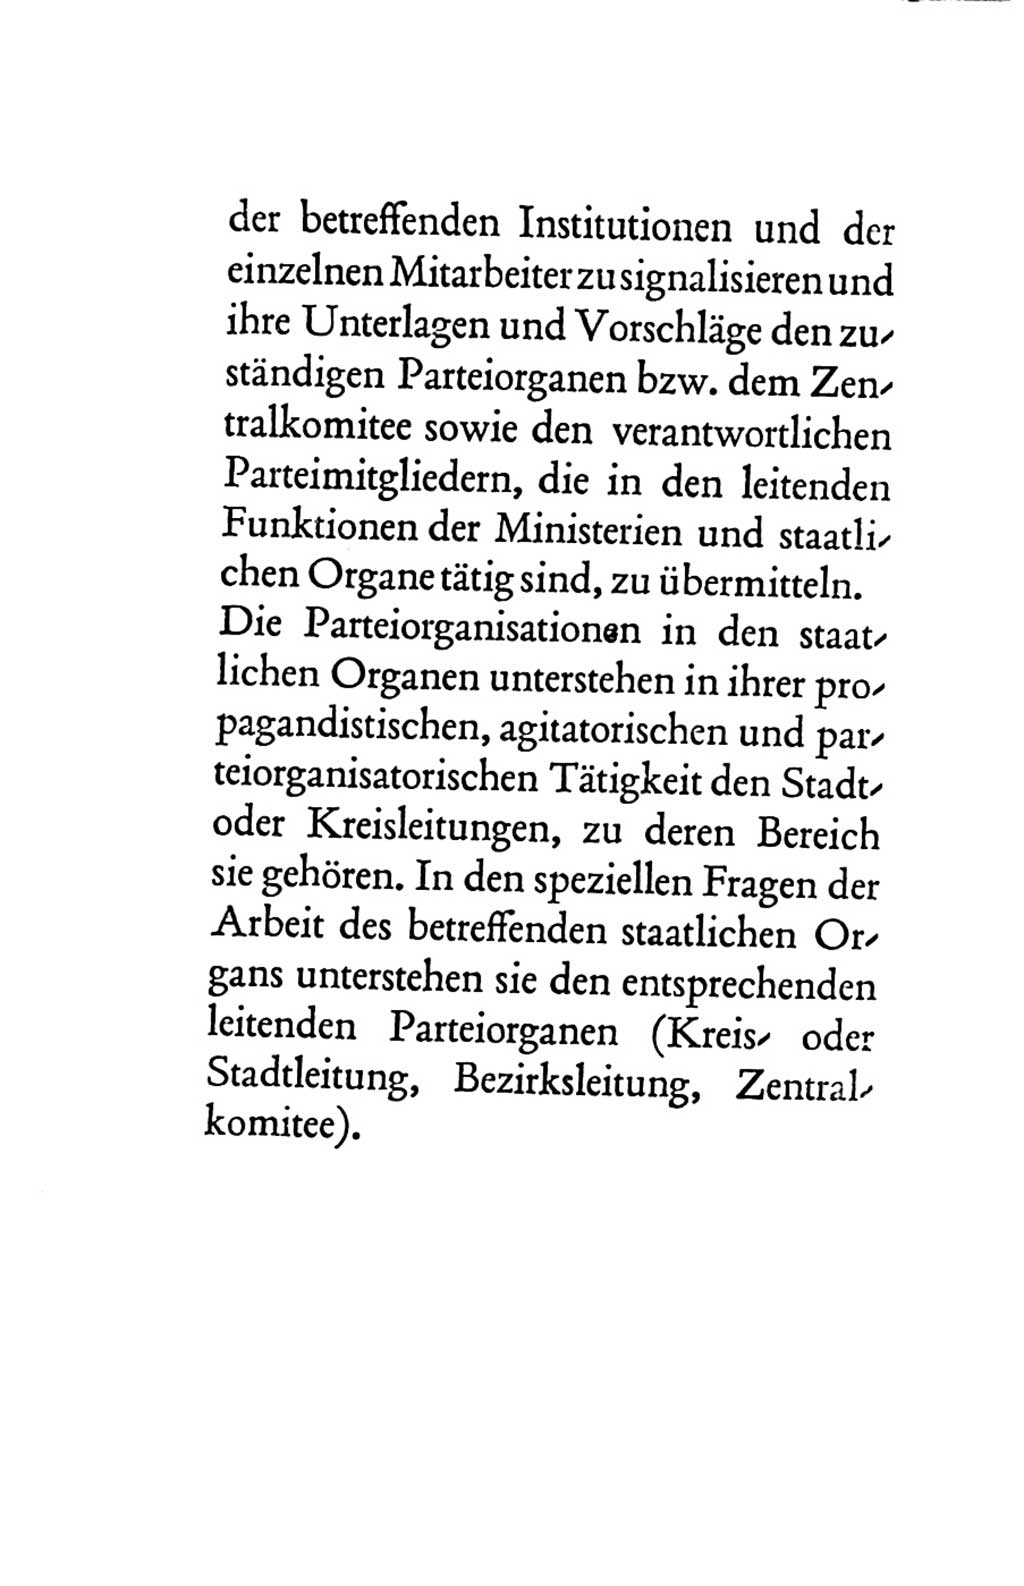 Statut der Sozialistischen Einheitspartei Deutschlands (SED) 1963, Seite 82 (St. SED DDR 1963, S. 82)